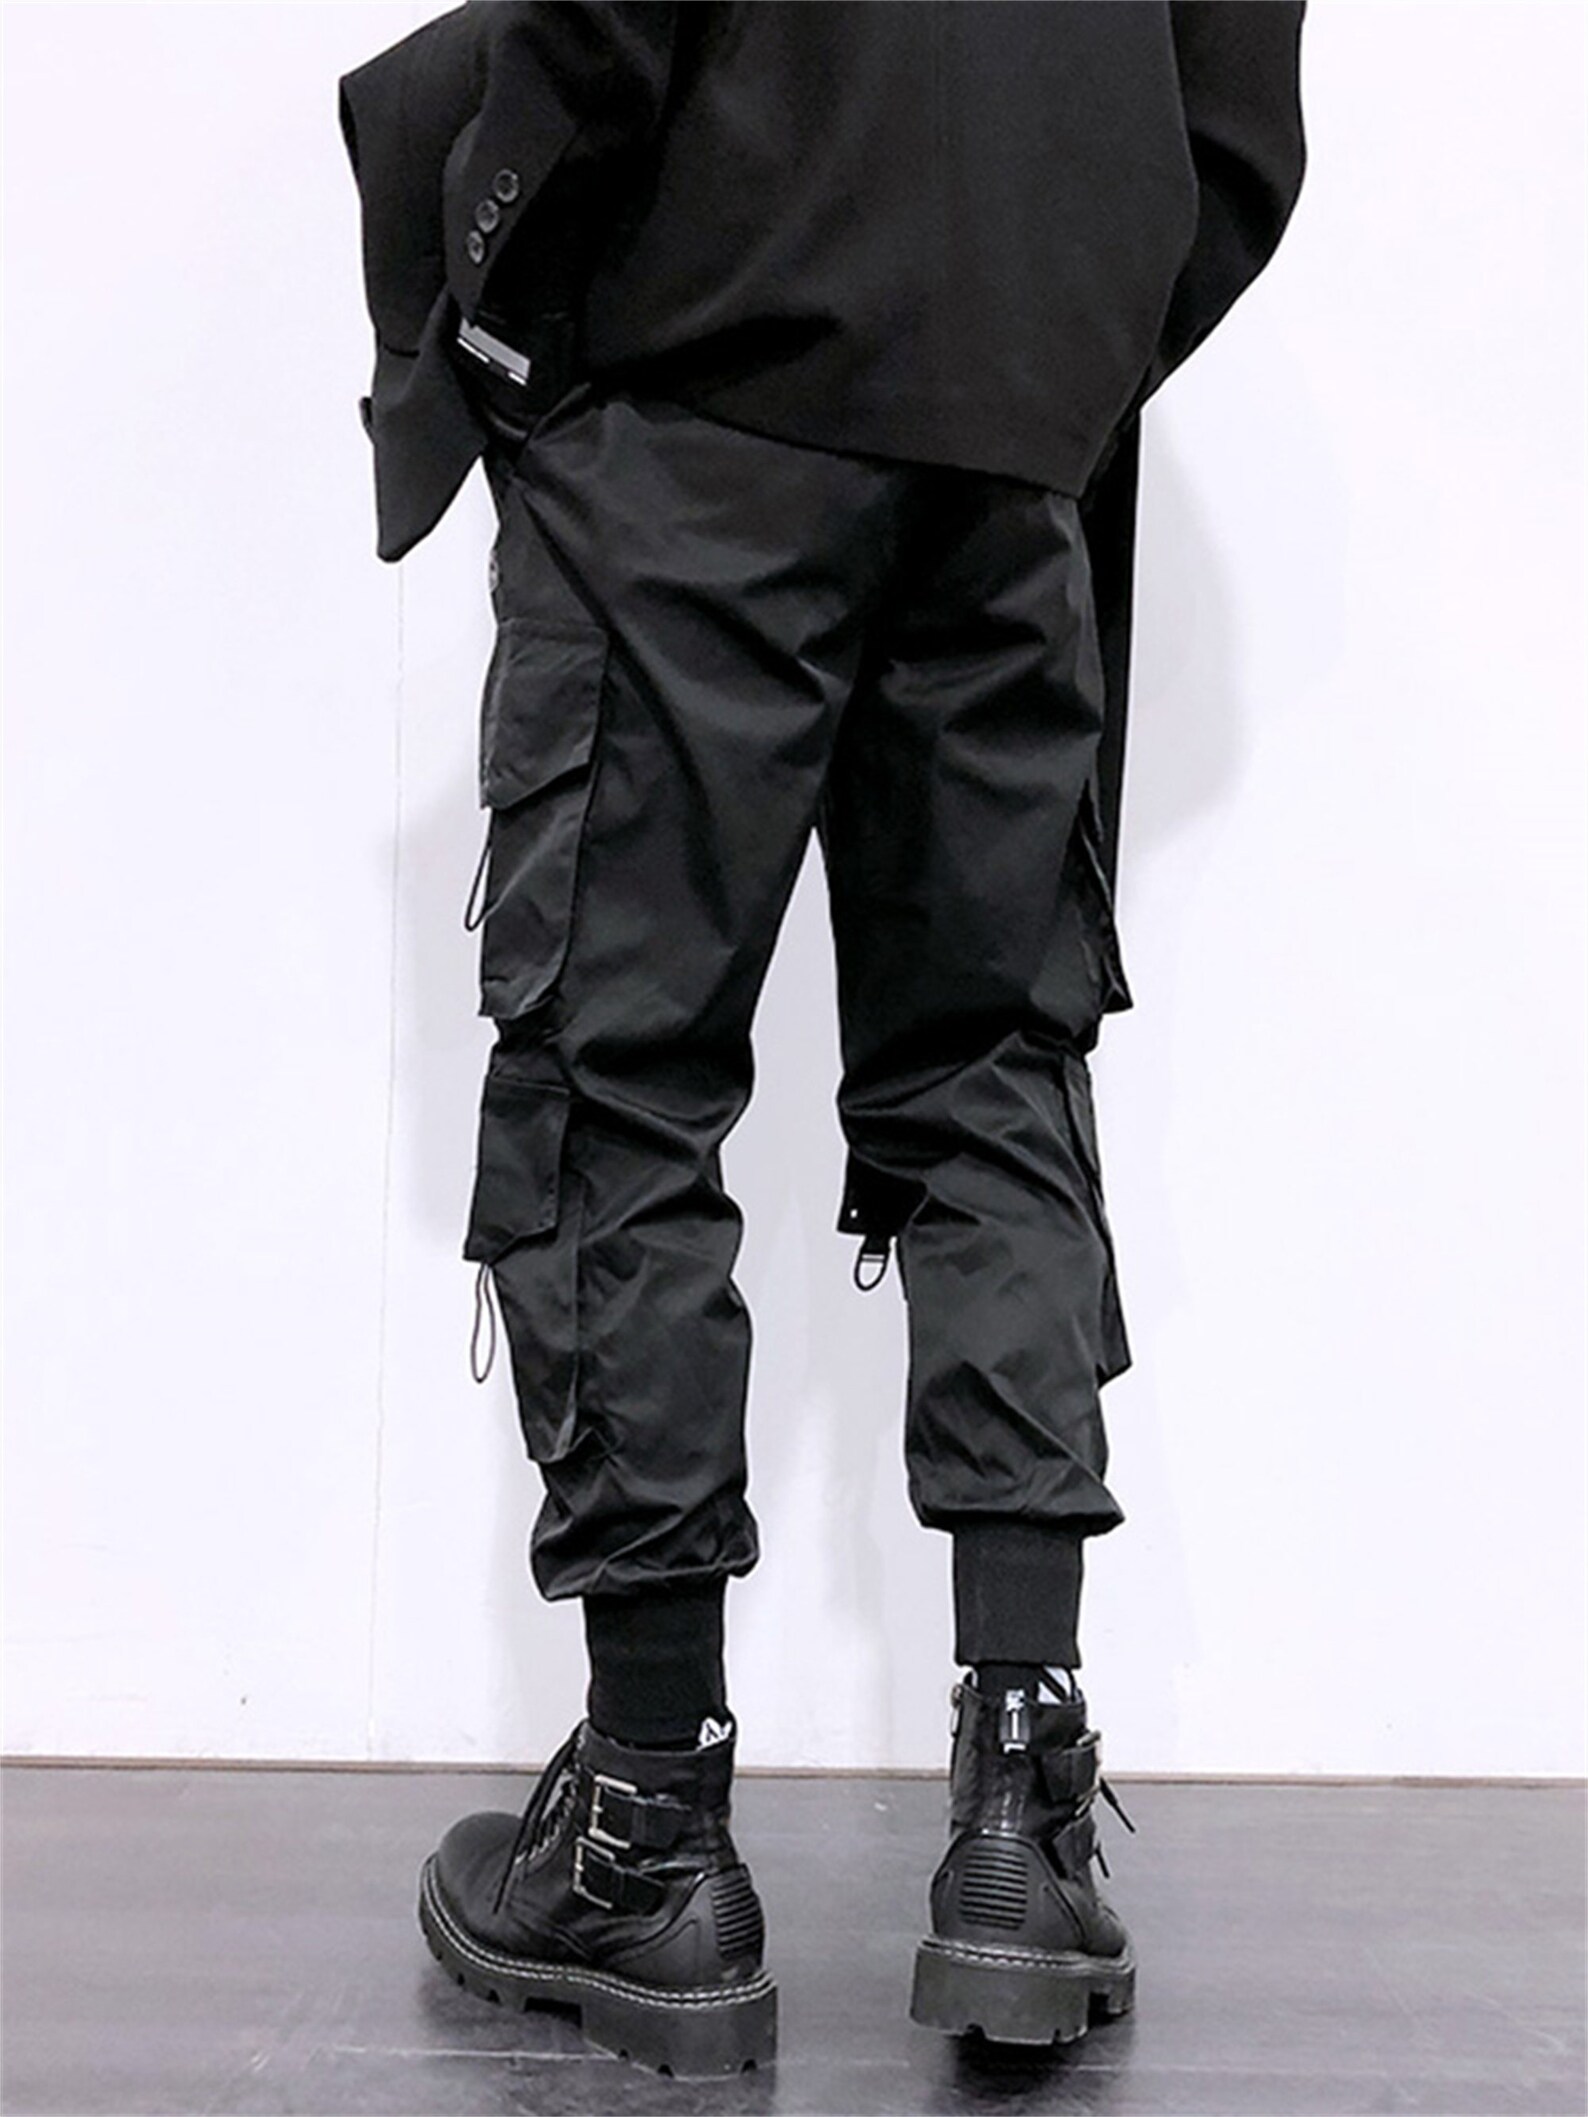 Techwear Streetwear Joggers Pants Cotton Ripped Black | Etsy